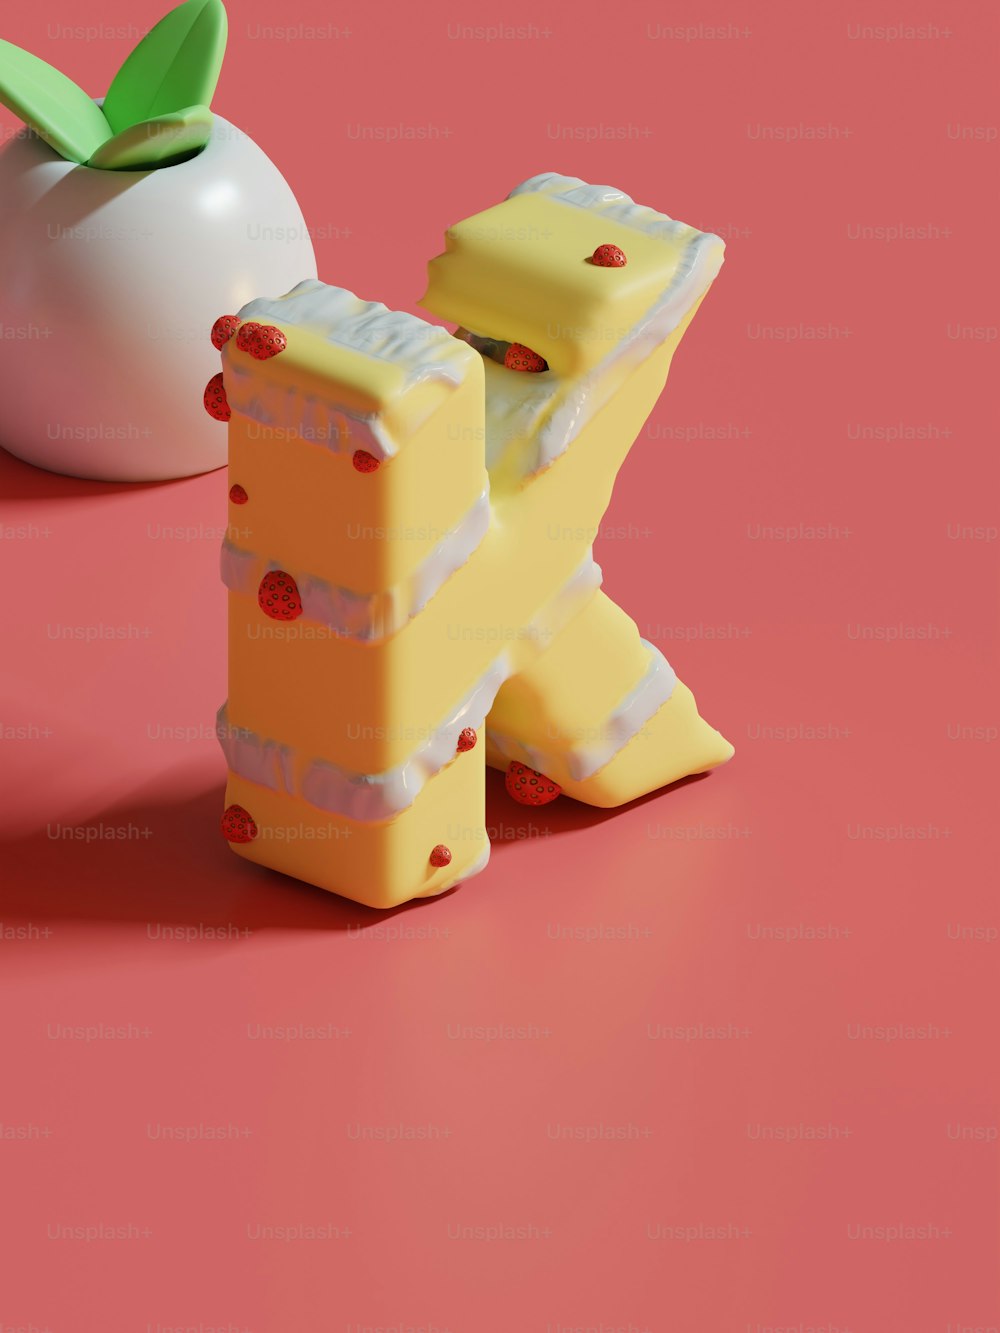 Ein Stück Käse sitzt neben einem Apfel auf einer rosa Oberfläche